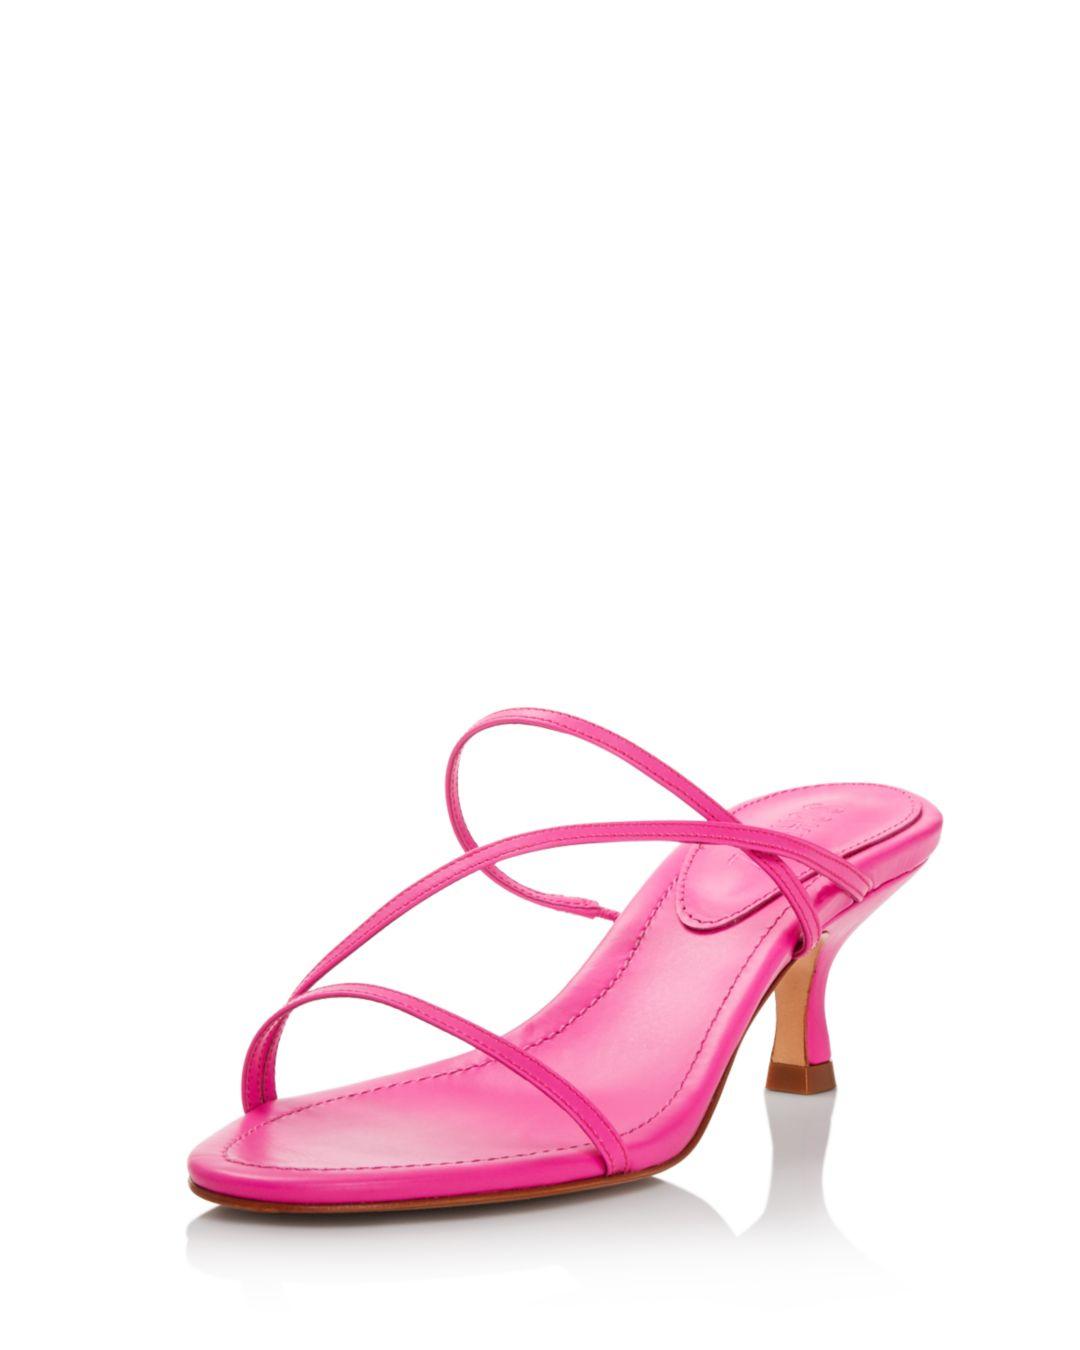 Schutz Women's Evenise Kitten Heel Sandals in Neon Pink (Pink) - Lyst